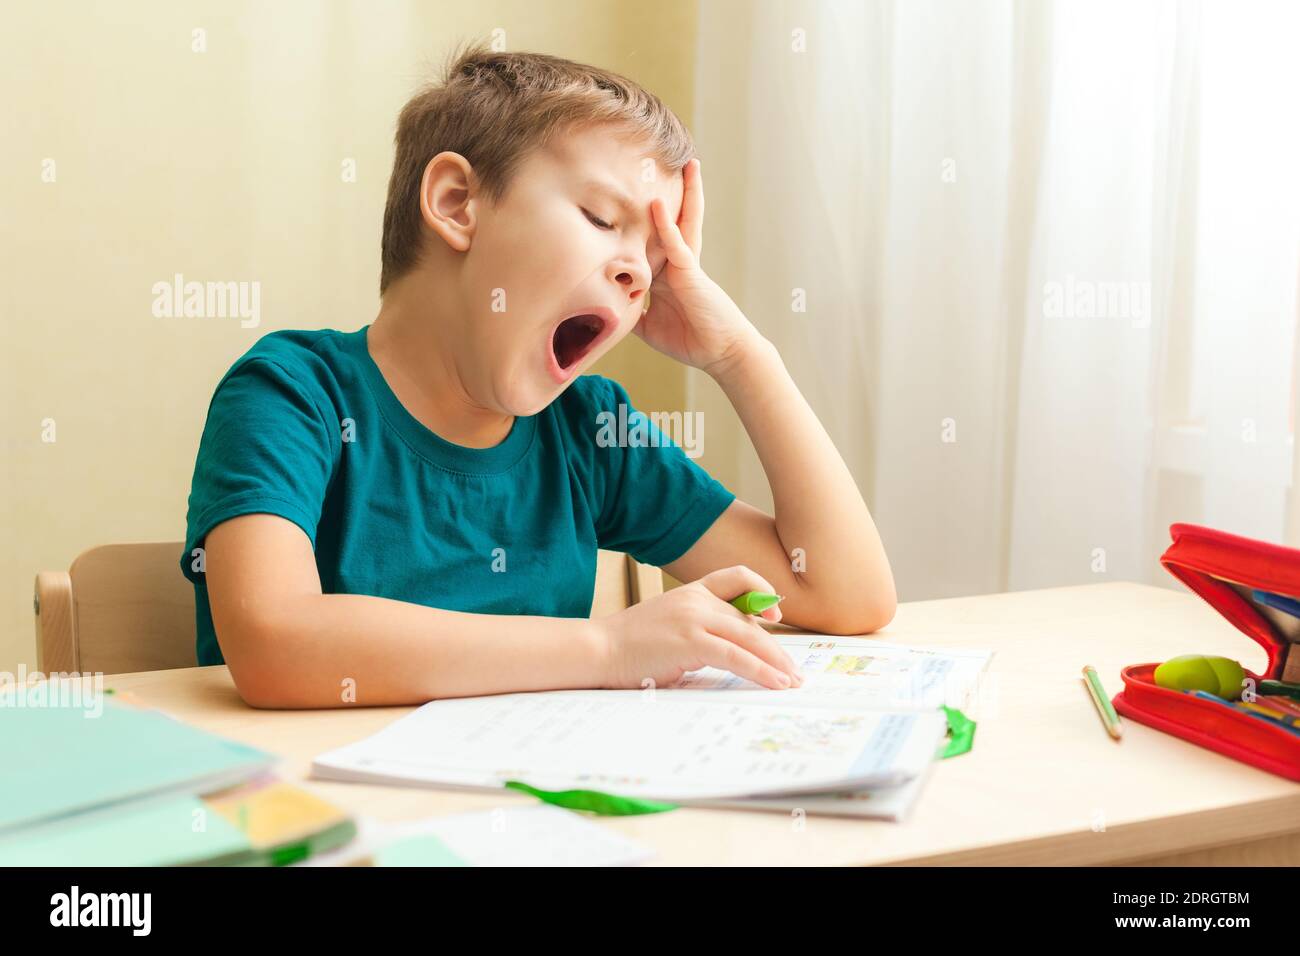 7 Jahre alter Junge, der am Schreibtisch sitzt und Hausaufgaben macht. Kind schreibt Notizen im Notizbuch, schwierige Hausaufgaben, Kind konzentriert sich auf Beispiele Stockfoto